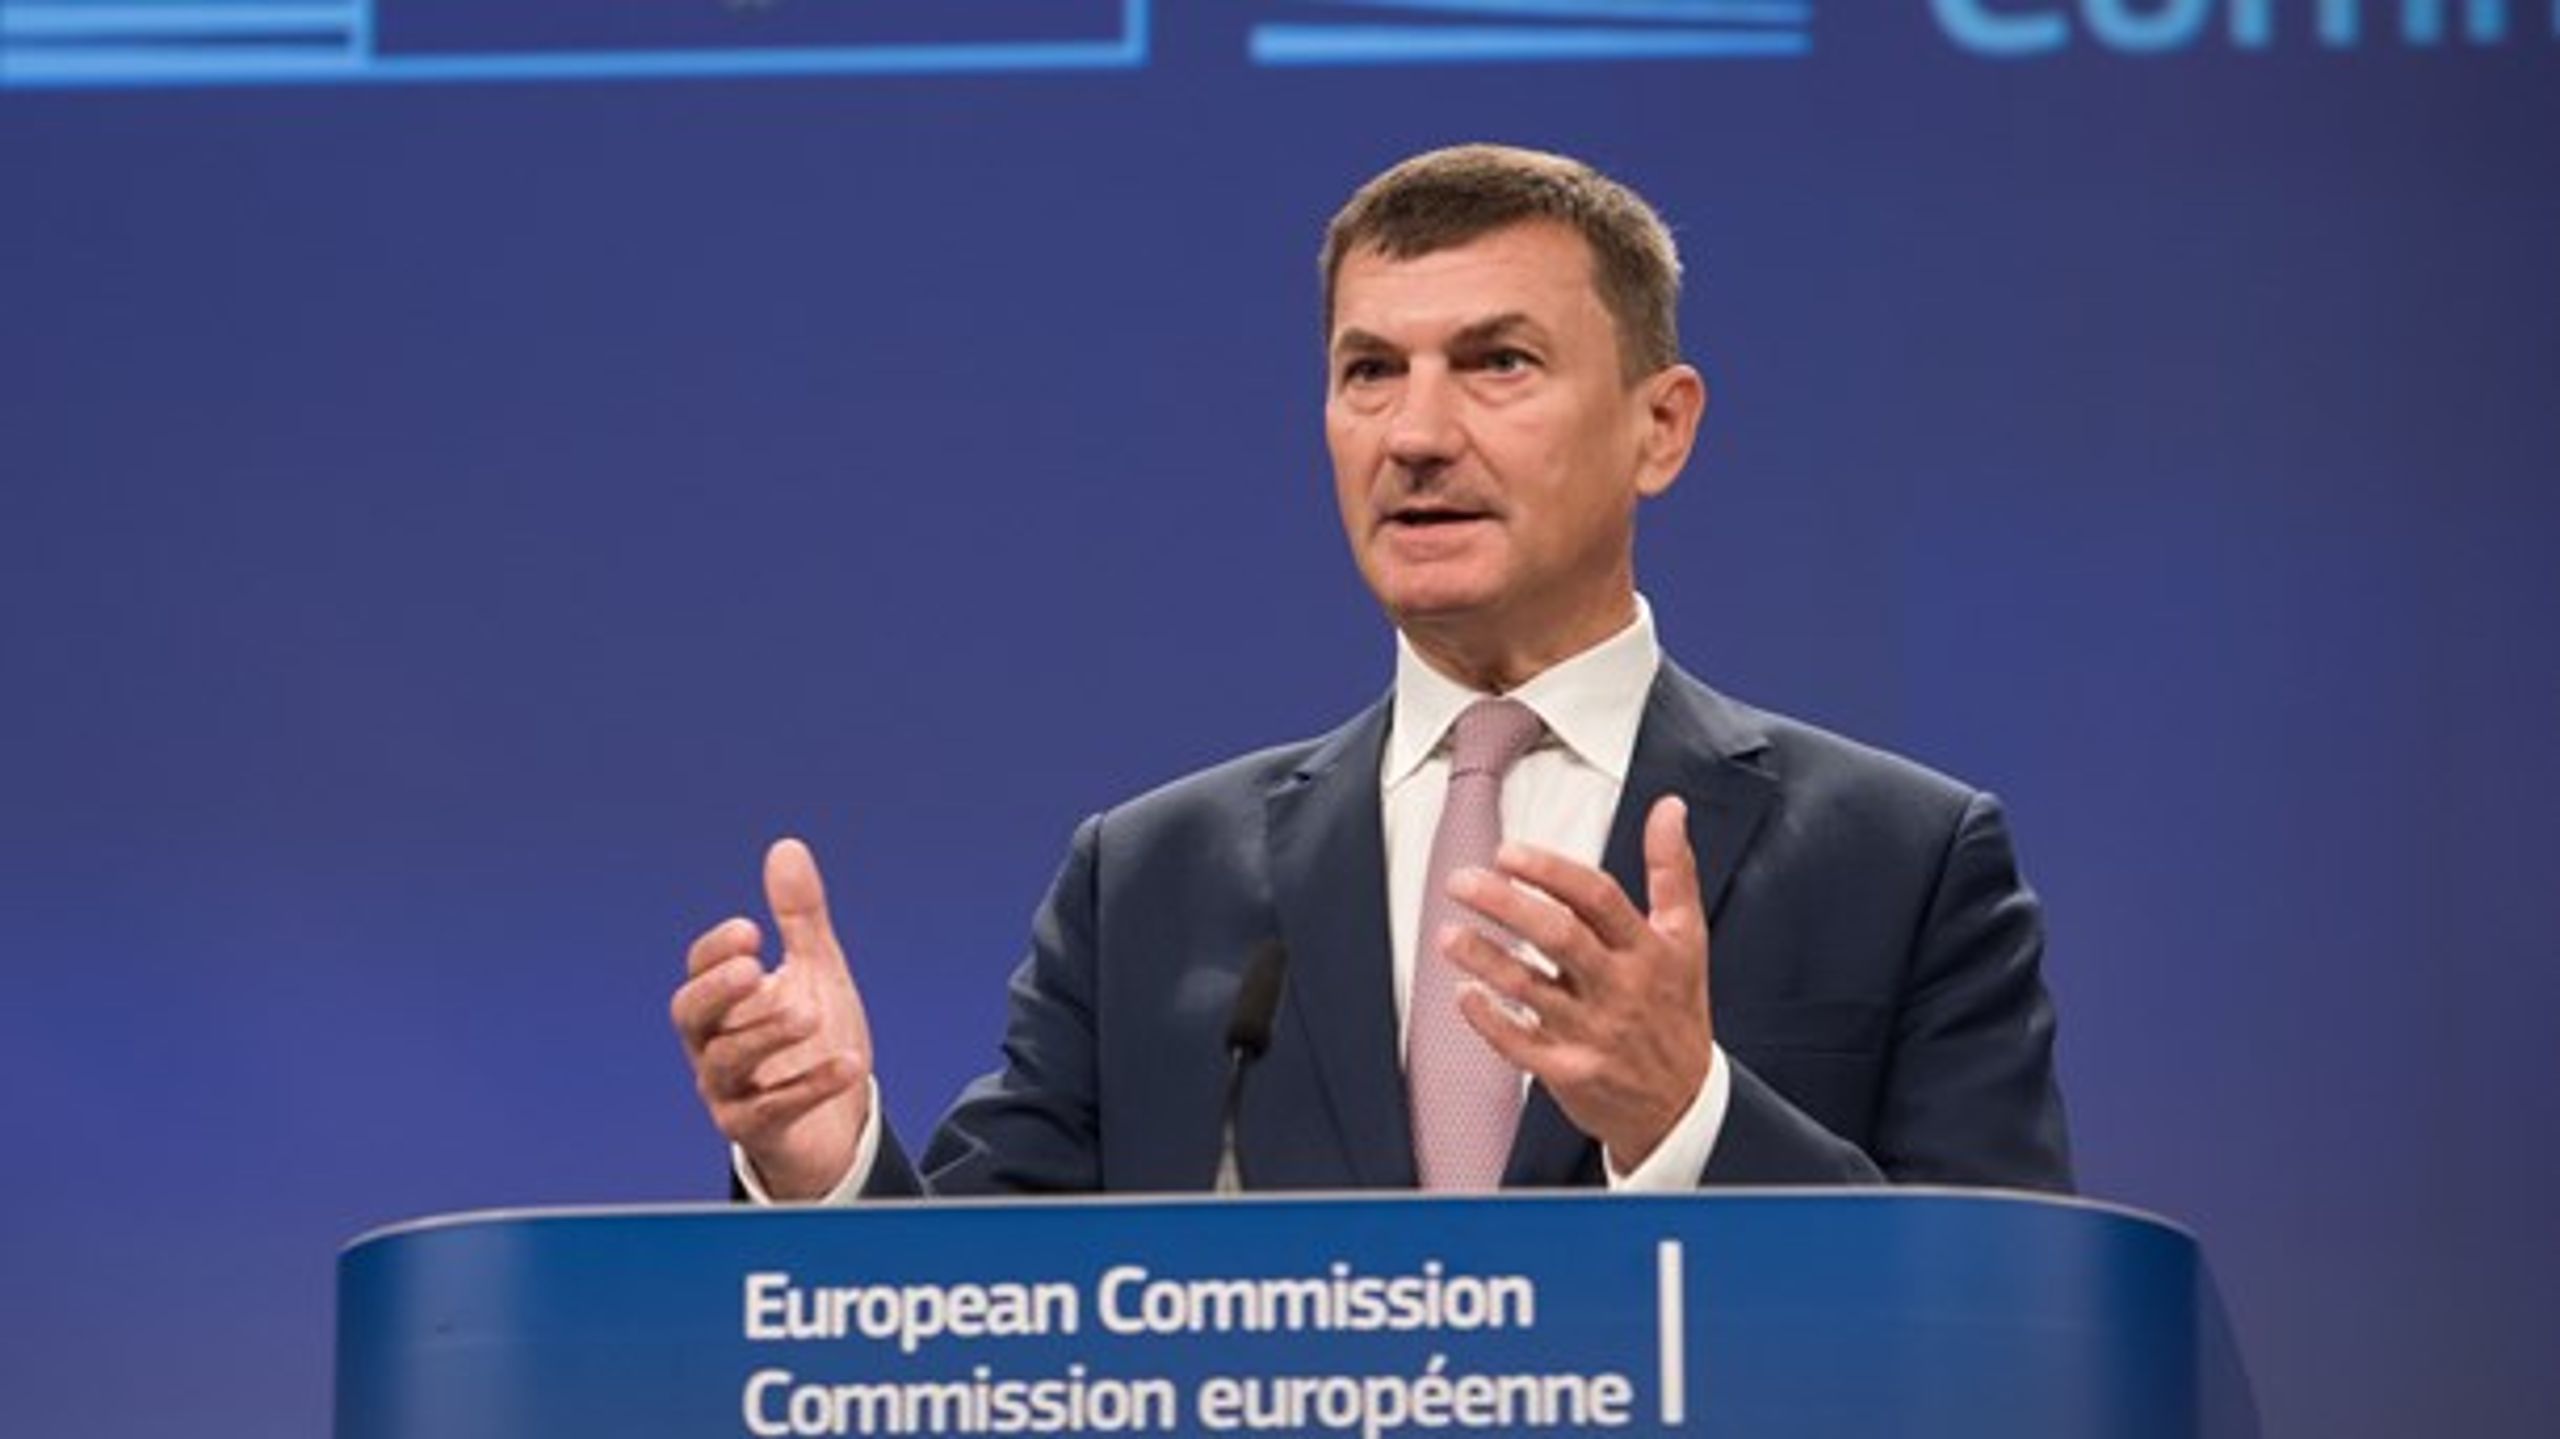 EU's vicekommissær for det digitale indre marked Andrus Ansip præsenterede onsdag EU-Kommissionens nye bud på regler, der skal forhindre misbrug, når den frie roaming i EU træder i kraft næste år.